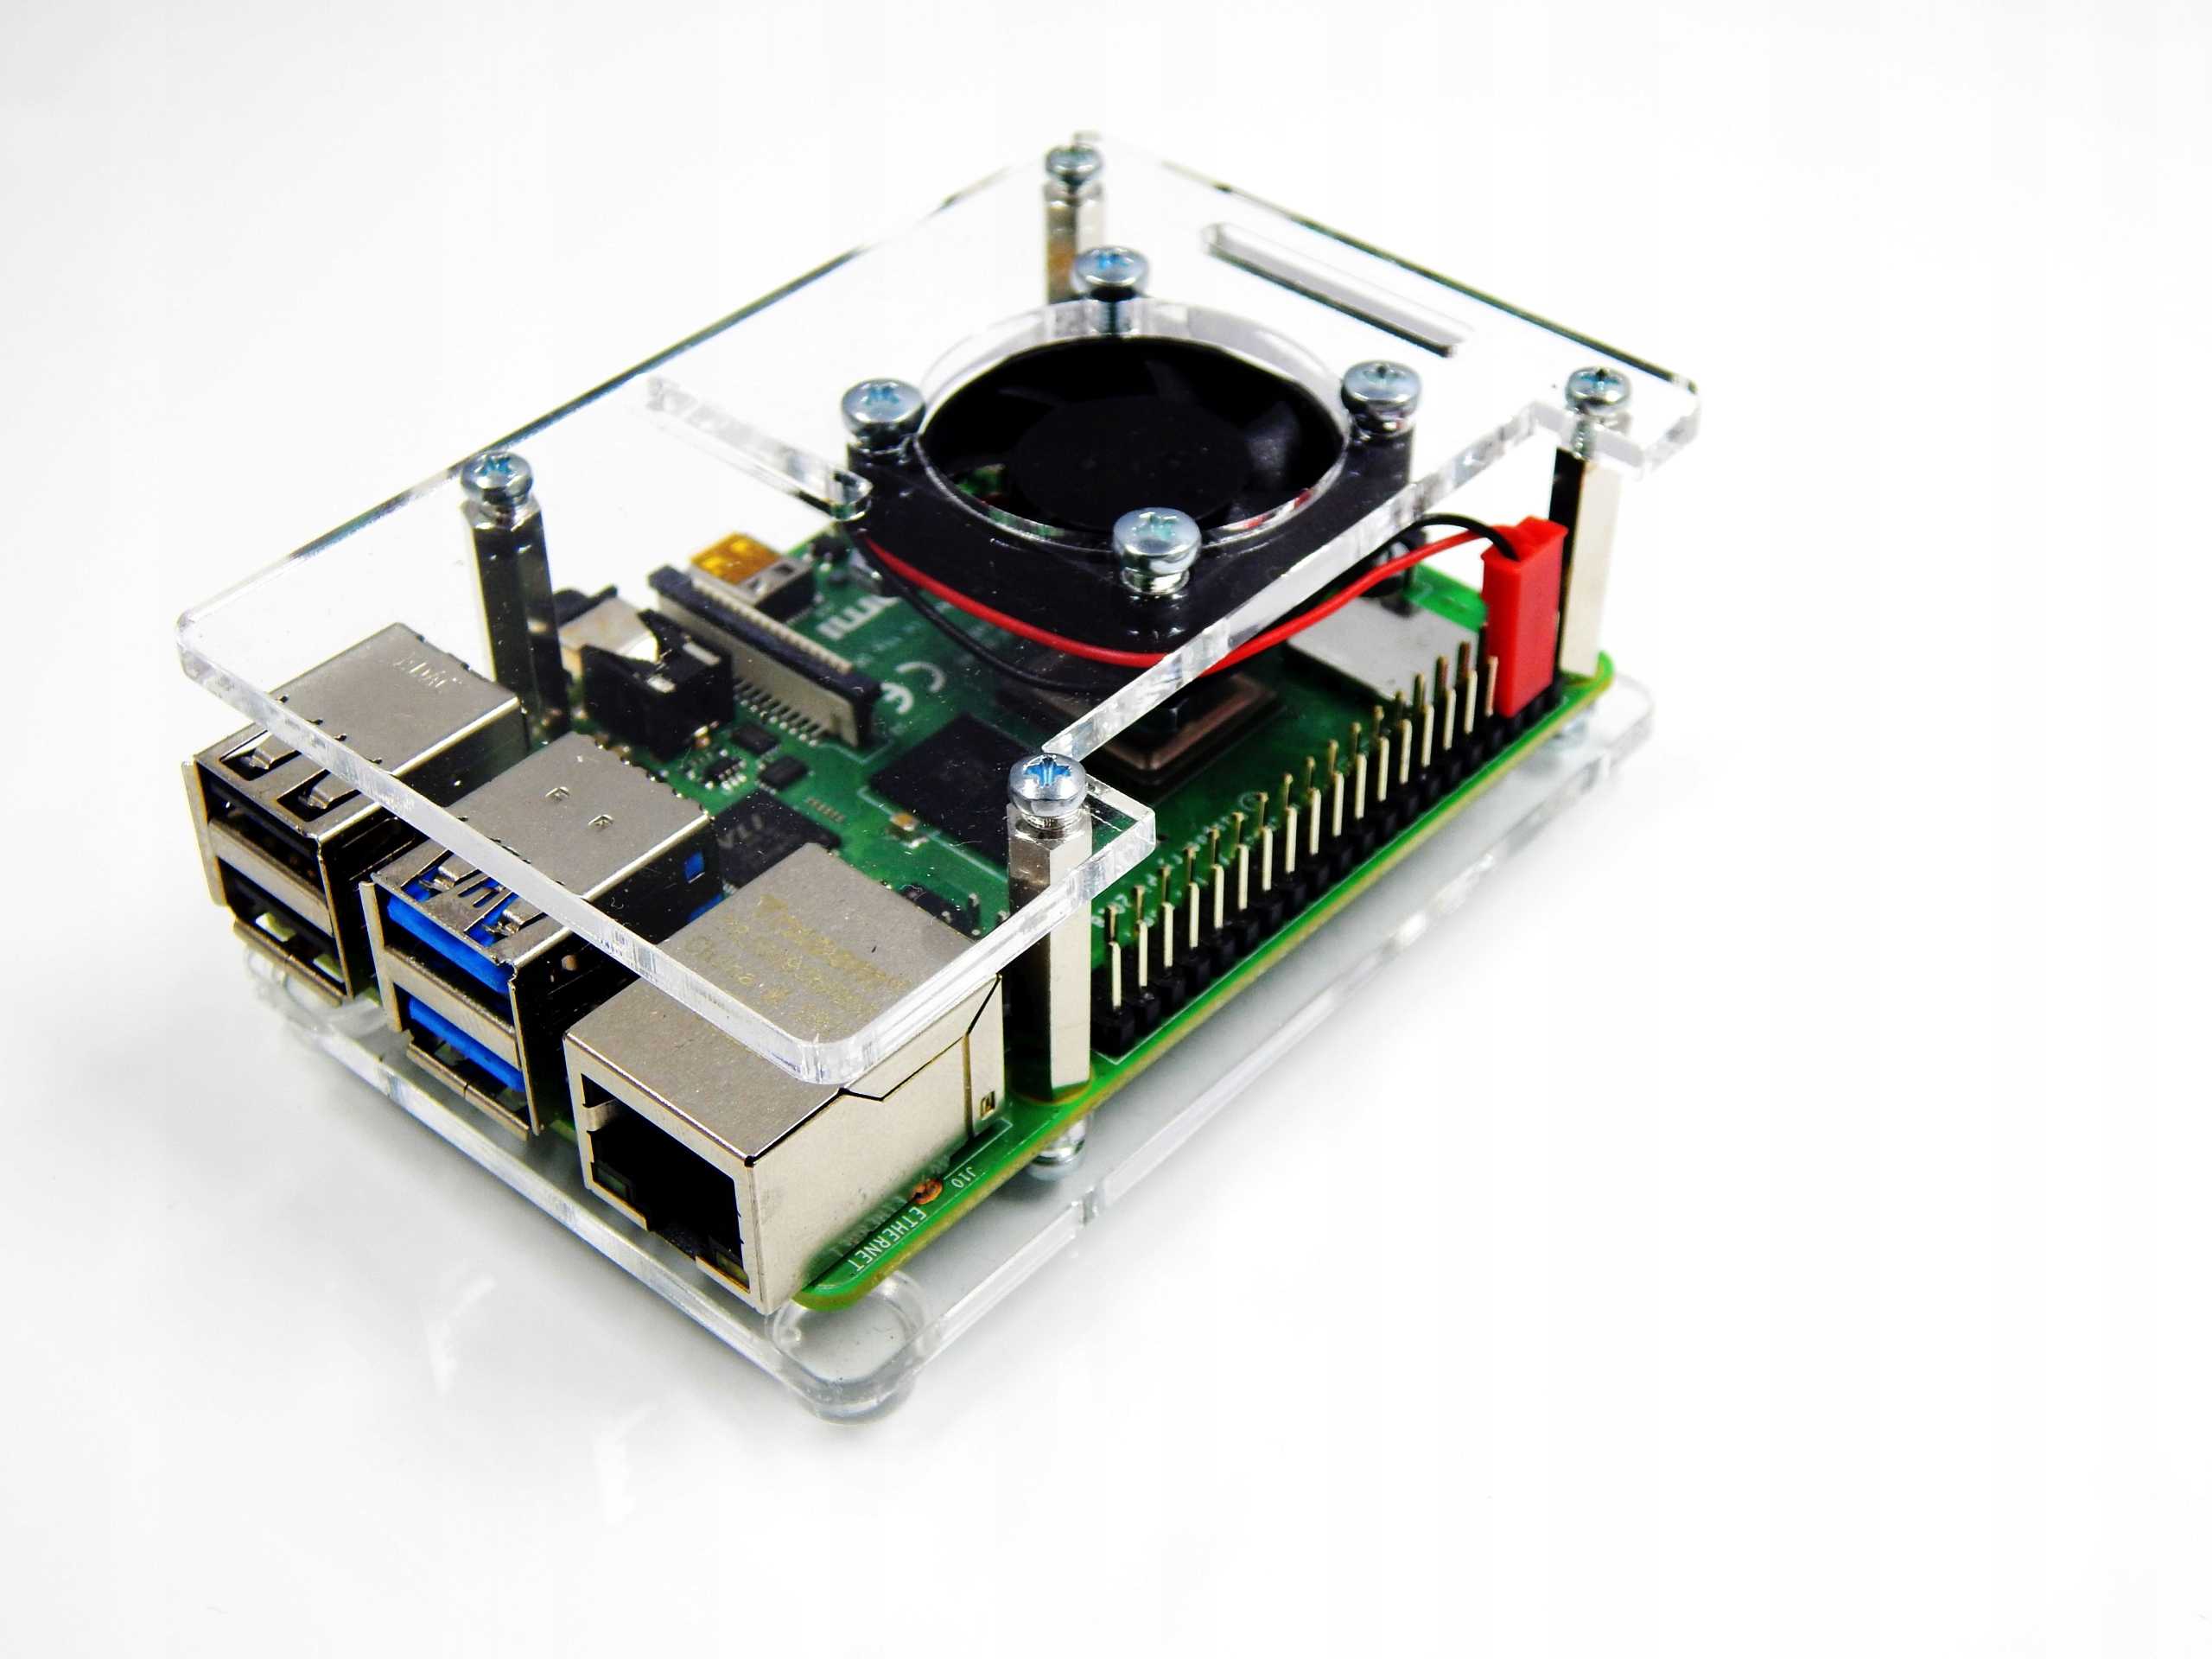 Raspberry pi 3 model b+ — мини-компьютер с поддержкой wi-fi 802.11ac, bluetooth 4.2 и gigabit ethernet